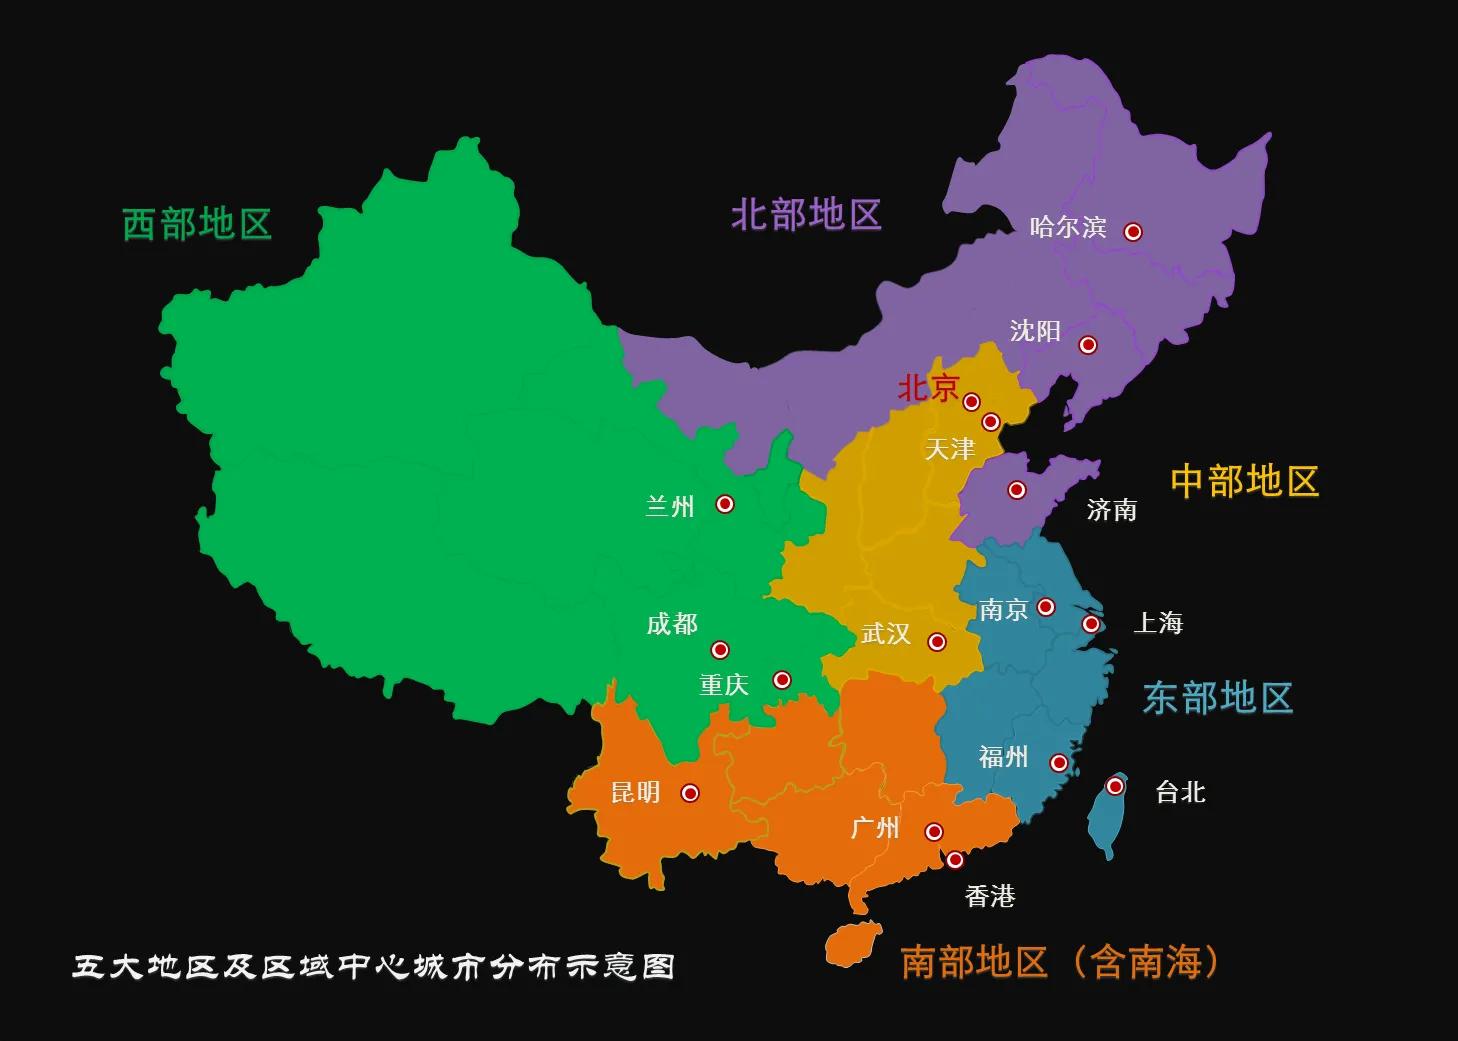 五大战区划分范围图（中国各大战区管辖范围）